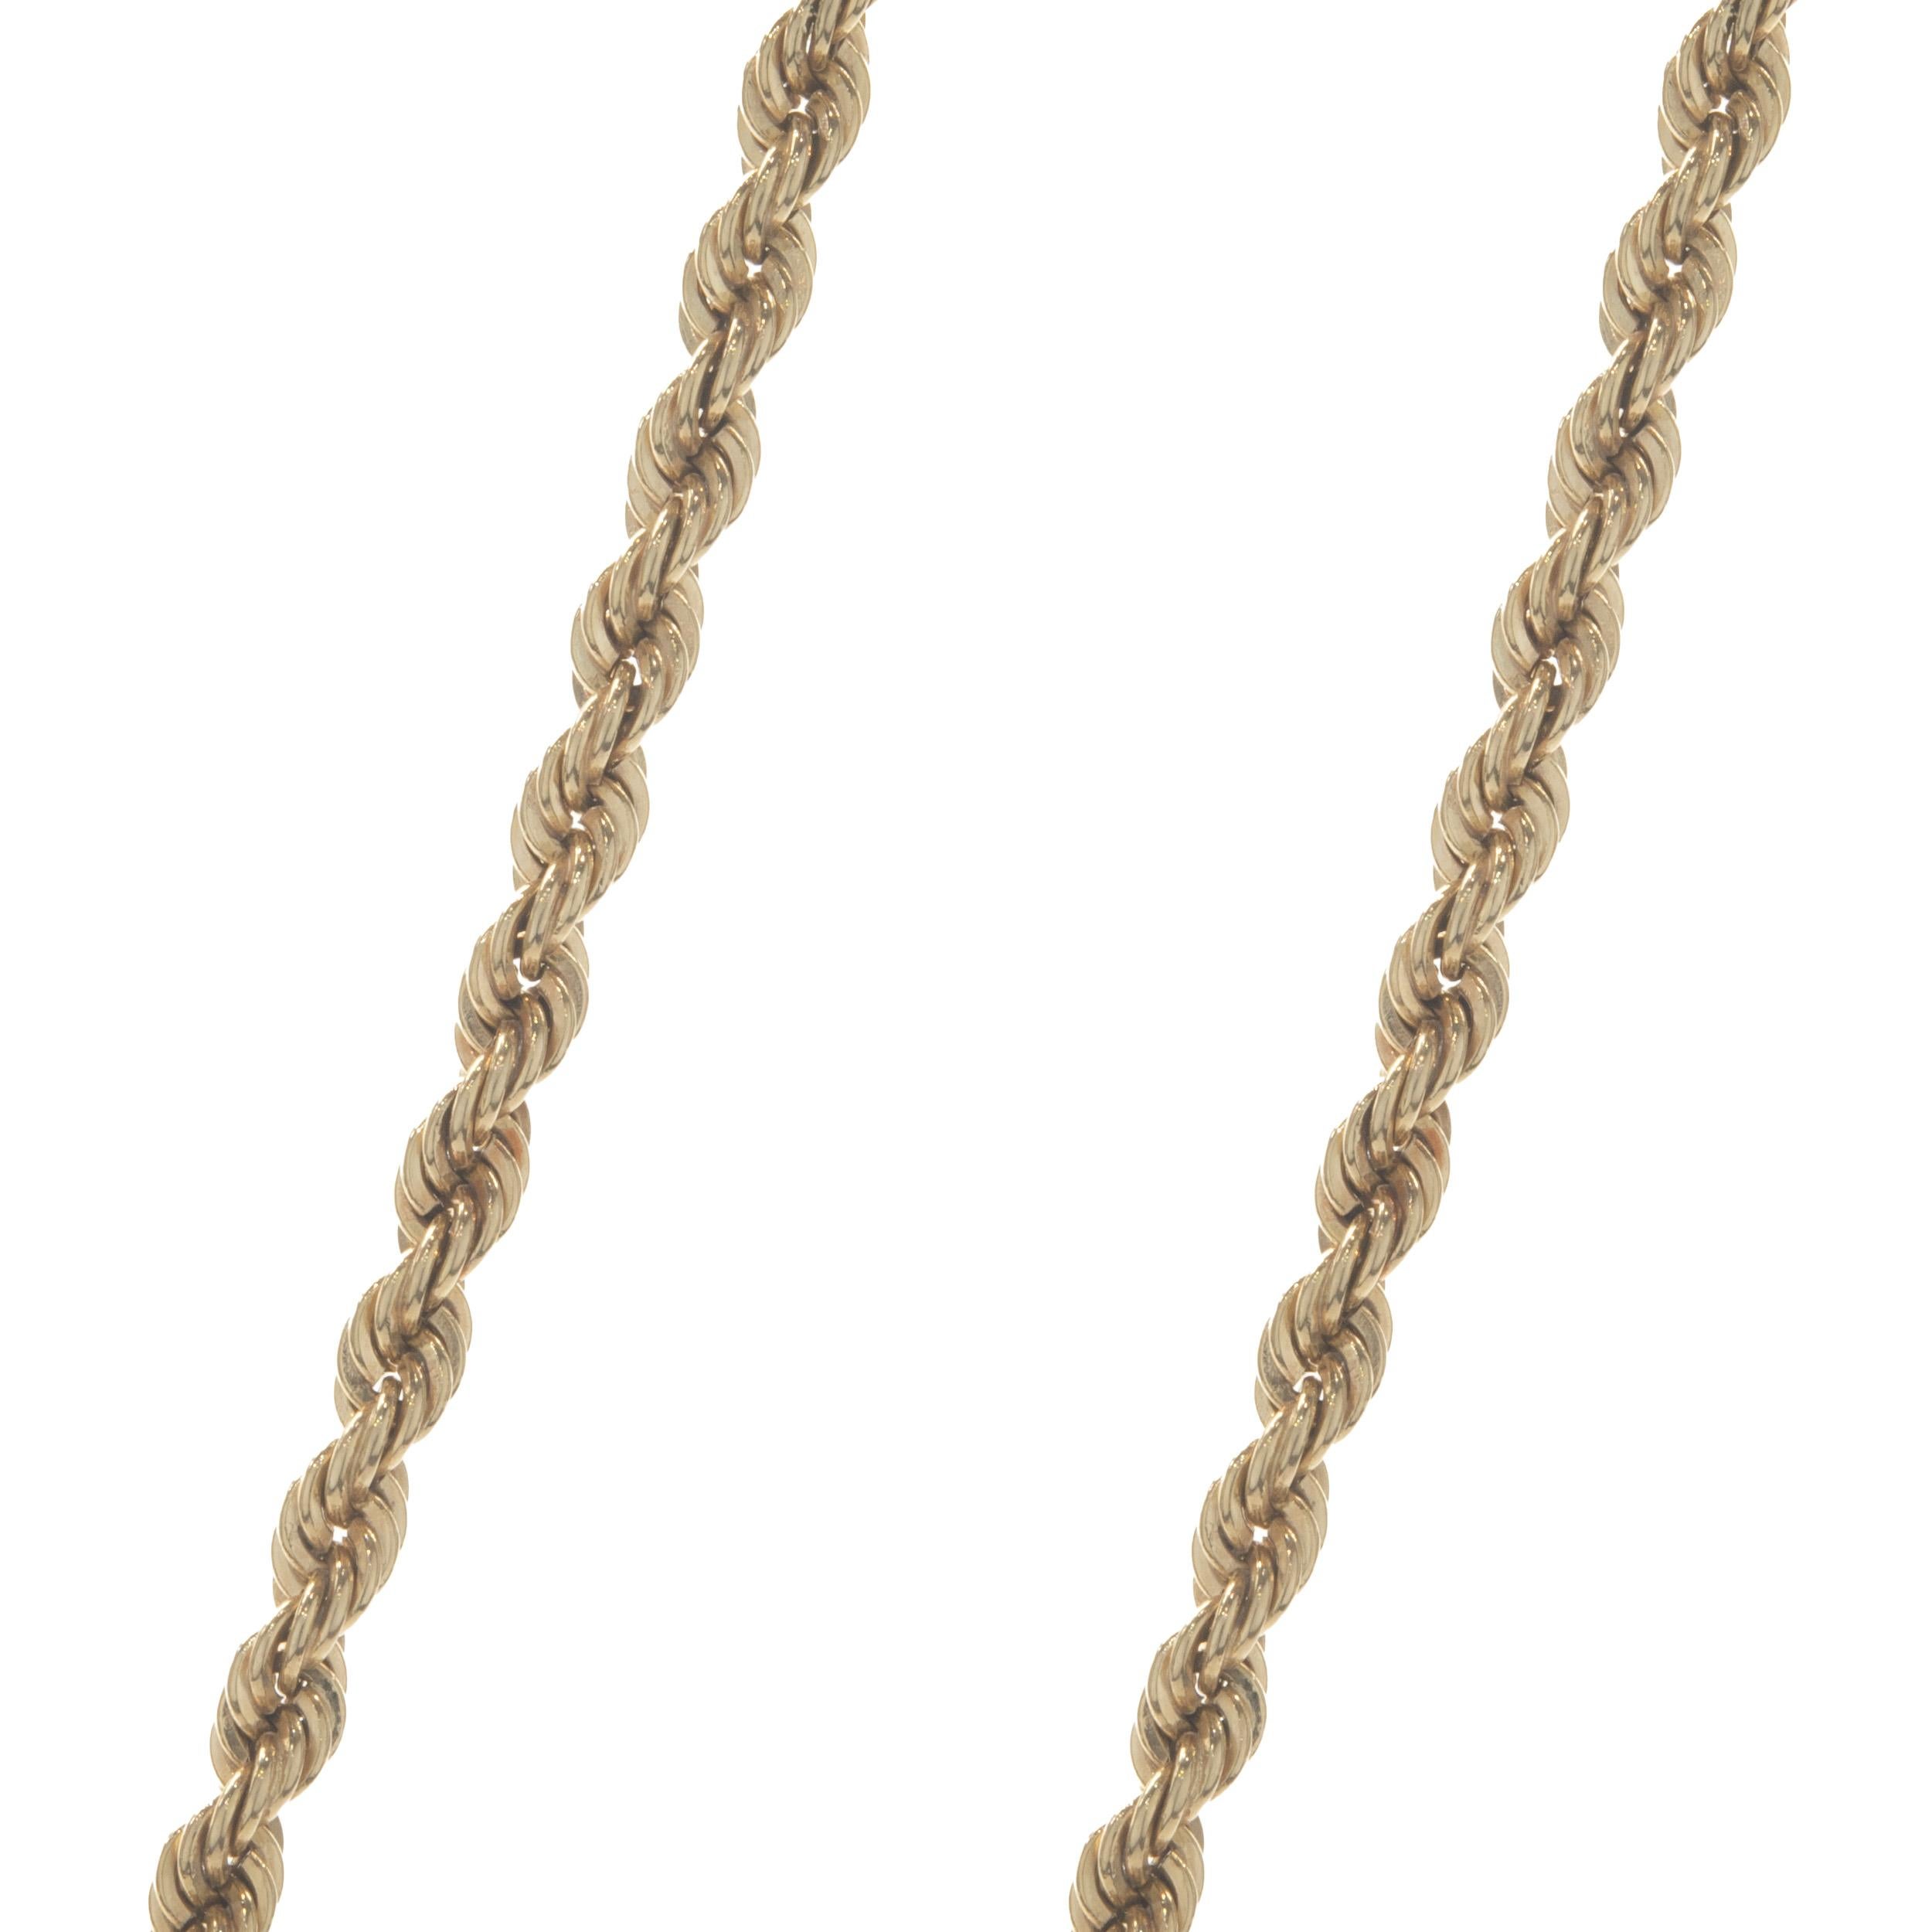 gold krugerrand necklace